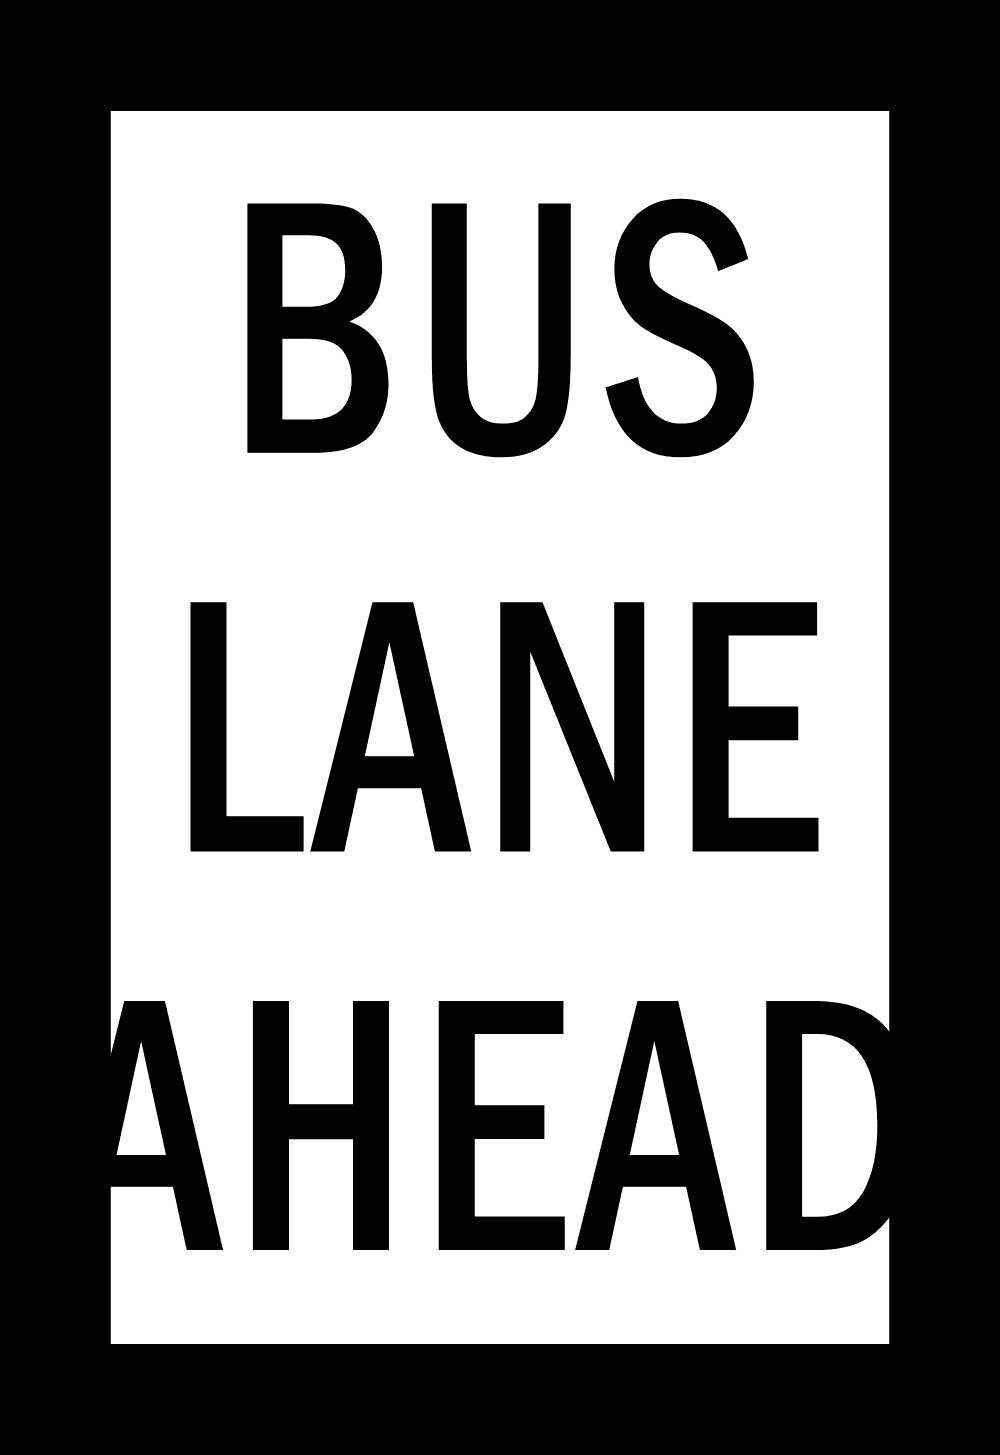 BUS LANE AHEAD SIGN Logo download